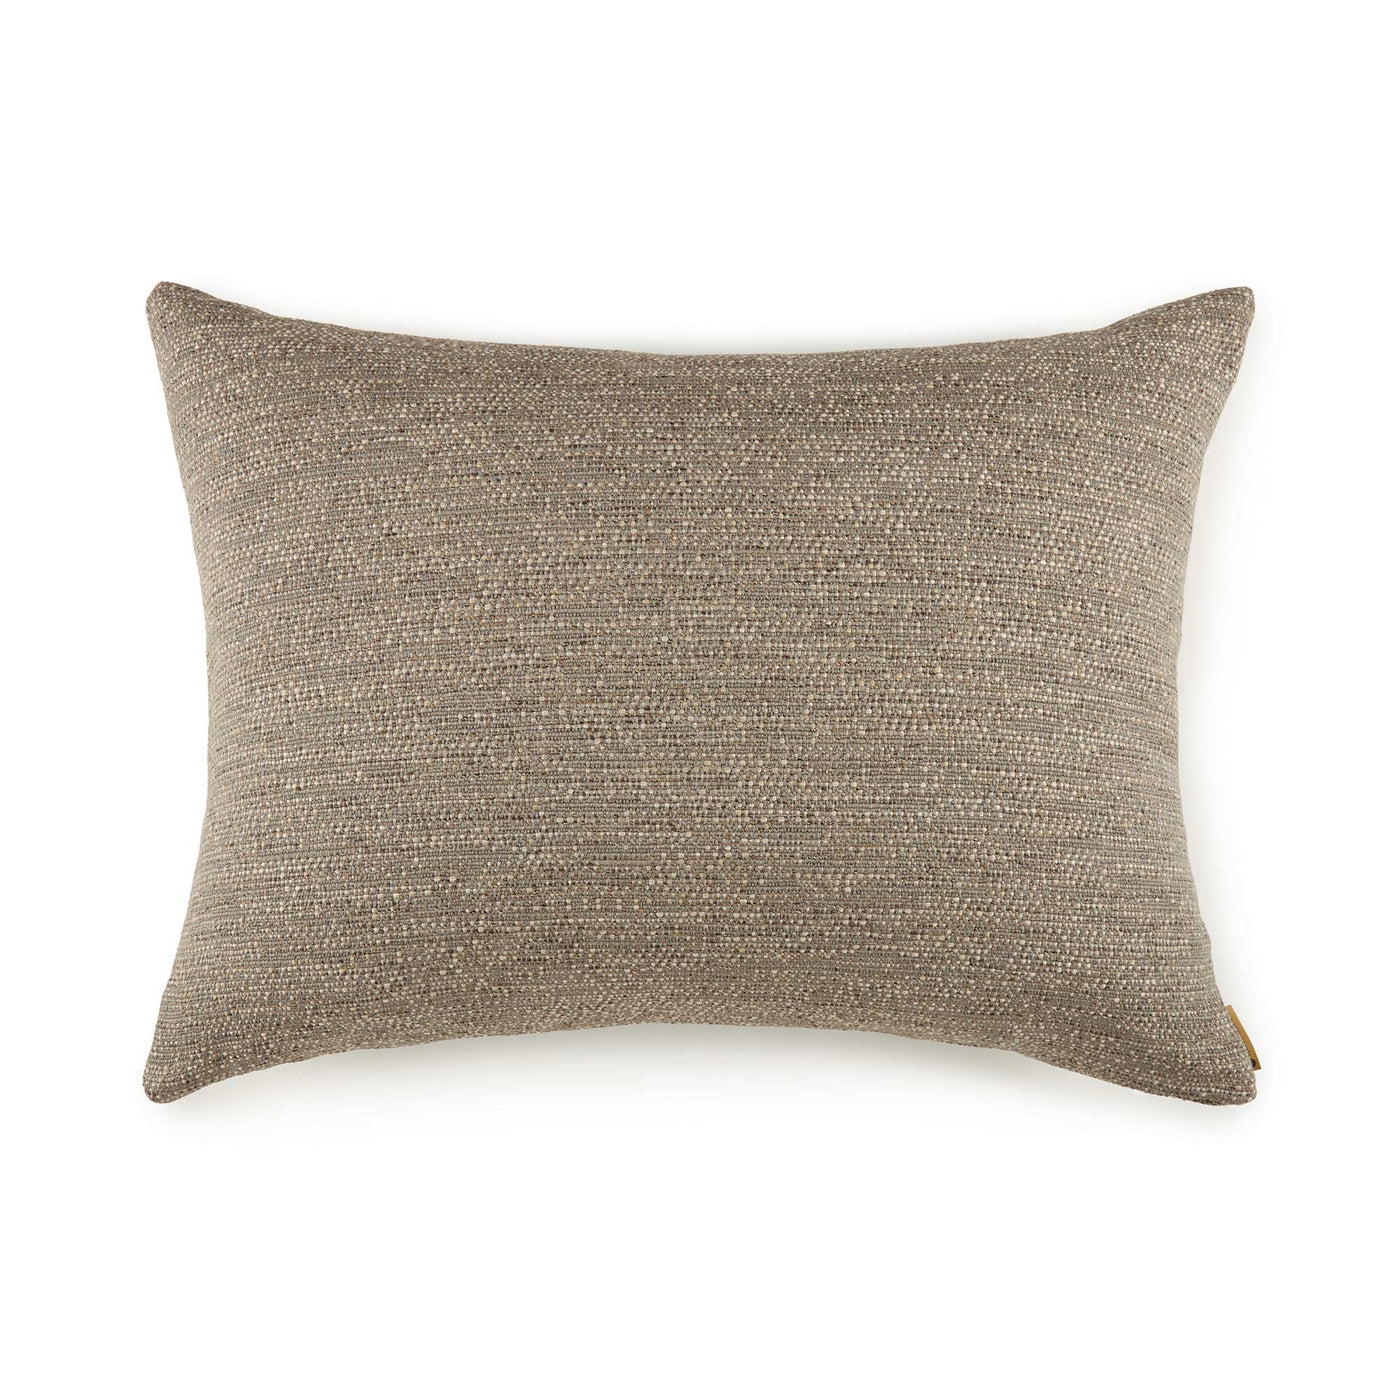 Bronico Flax Euro Pillow (26x26)